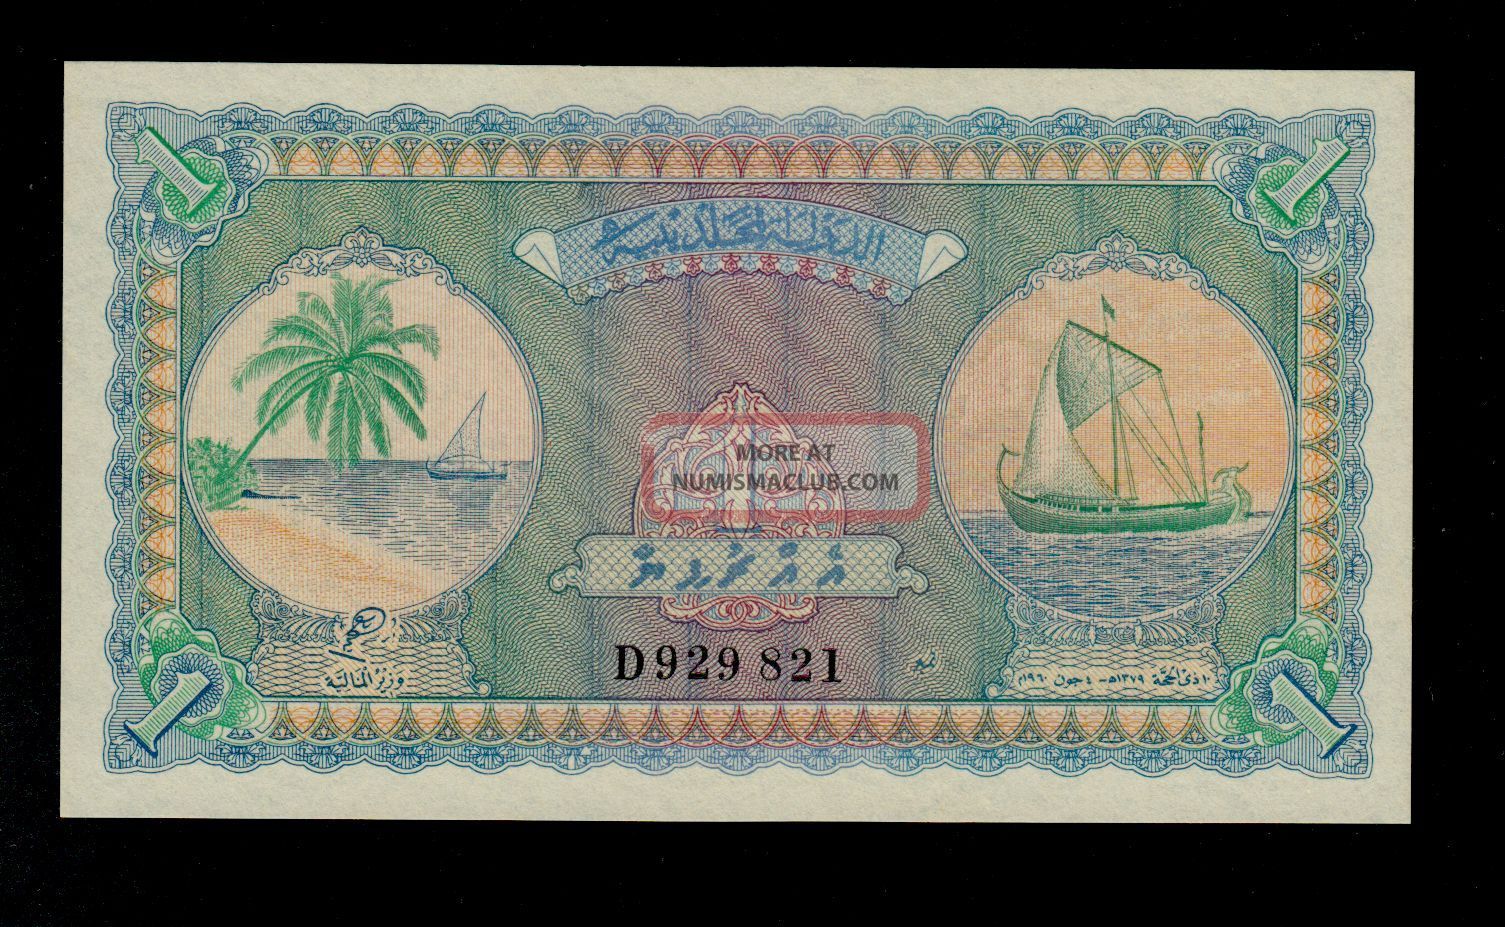 Maldives 1 Rupee 1960 Pick 2 Unc Banknote. Asia photo